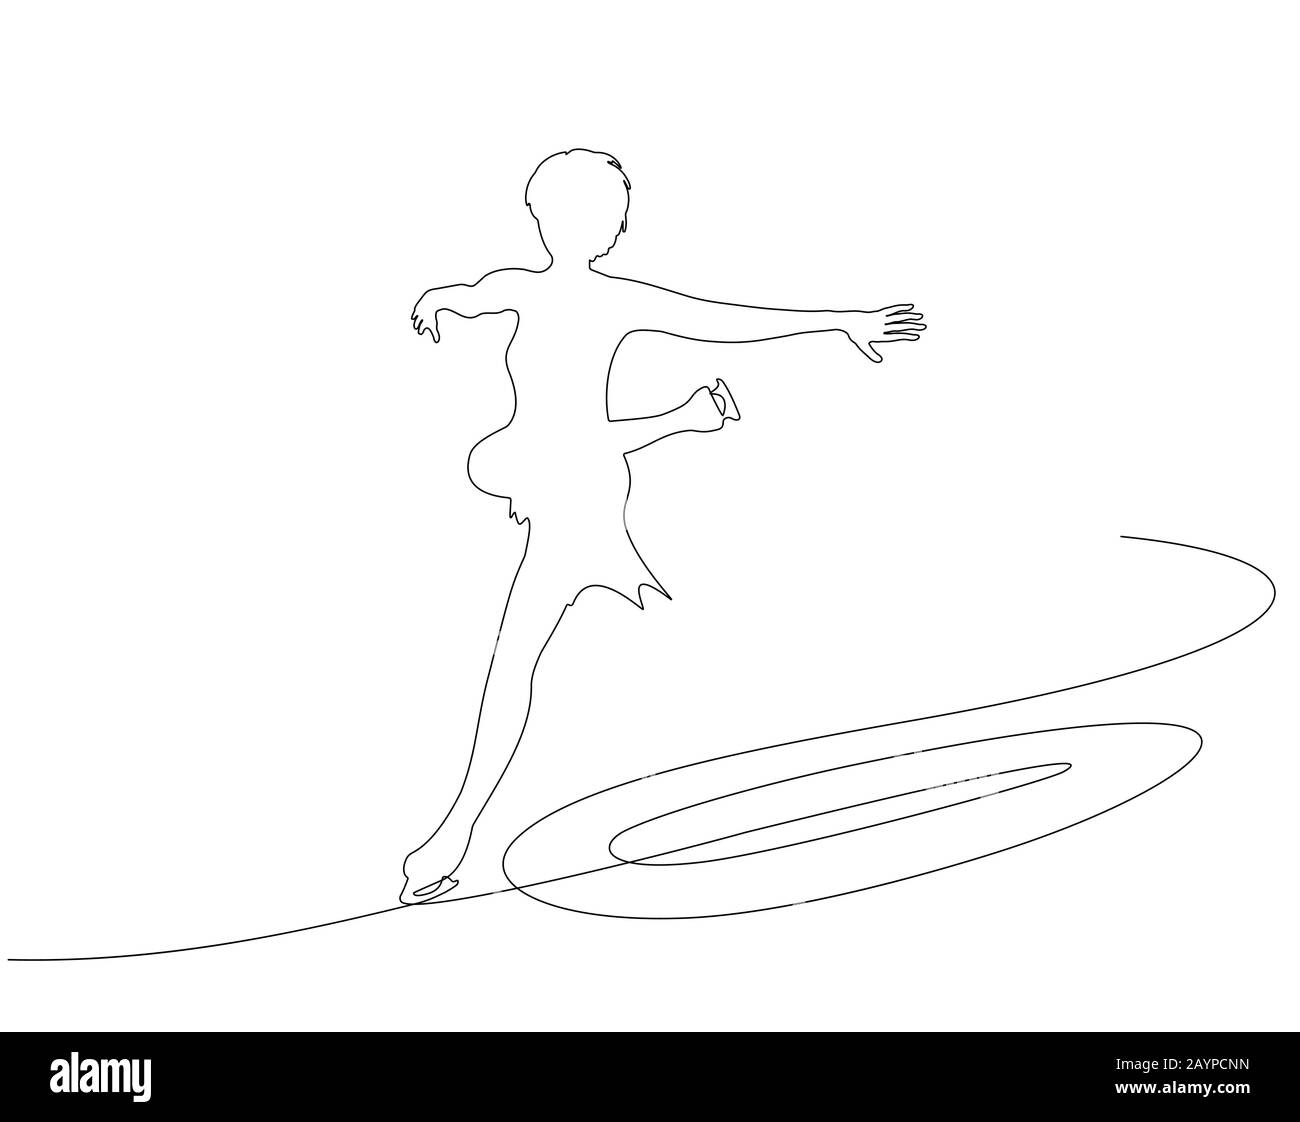 Sport d'hiver de patinage artistique, fille montre un exercice. Une illustration de dessin en ligne continue pour votre conception. Illustration de Vecteur